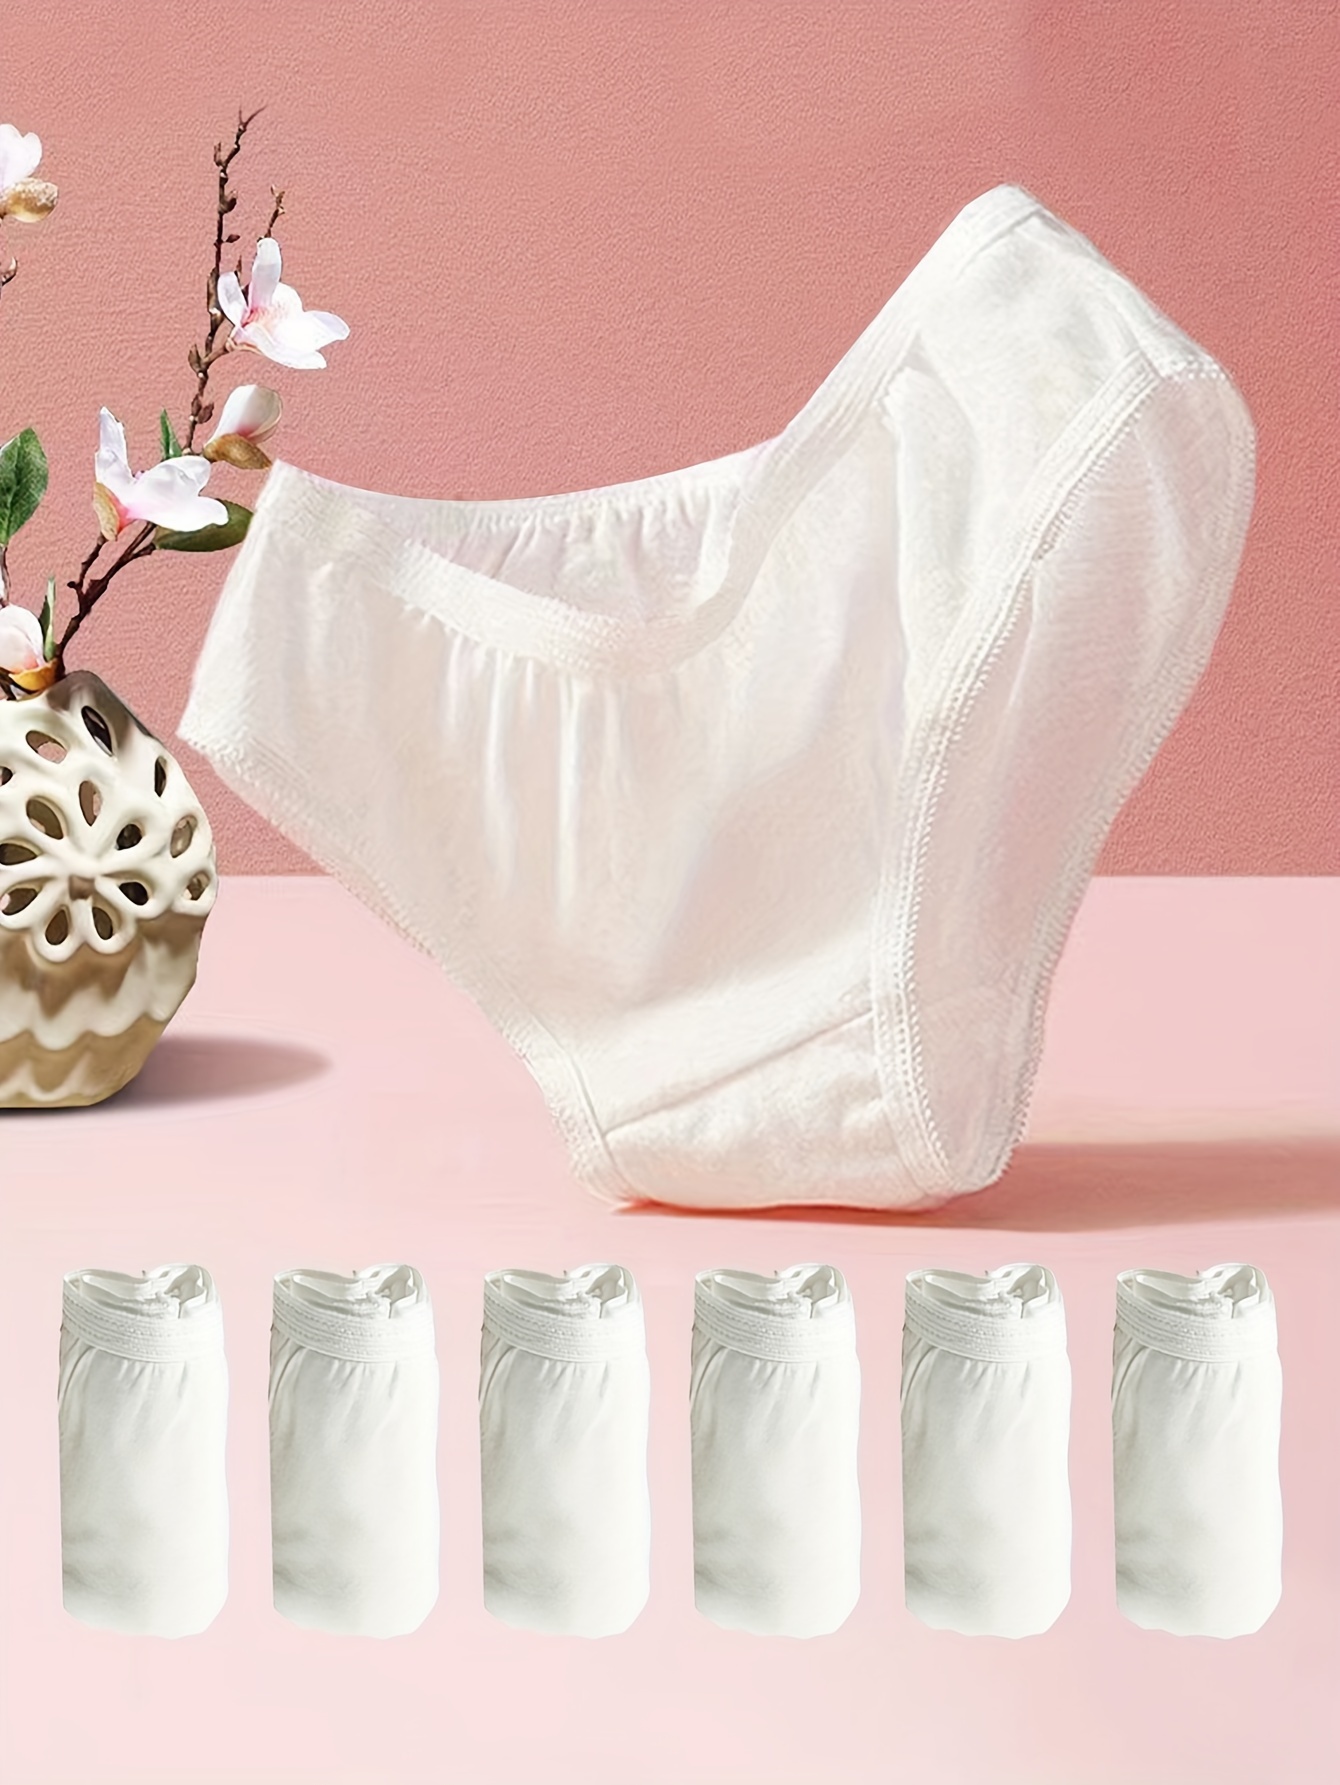 7PCS Women Disposable Underwear Cotton Travel Sterilized Panties